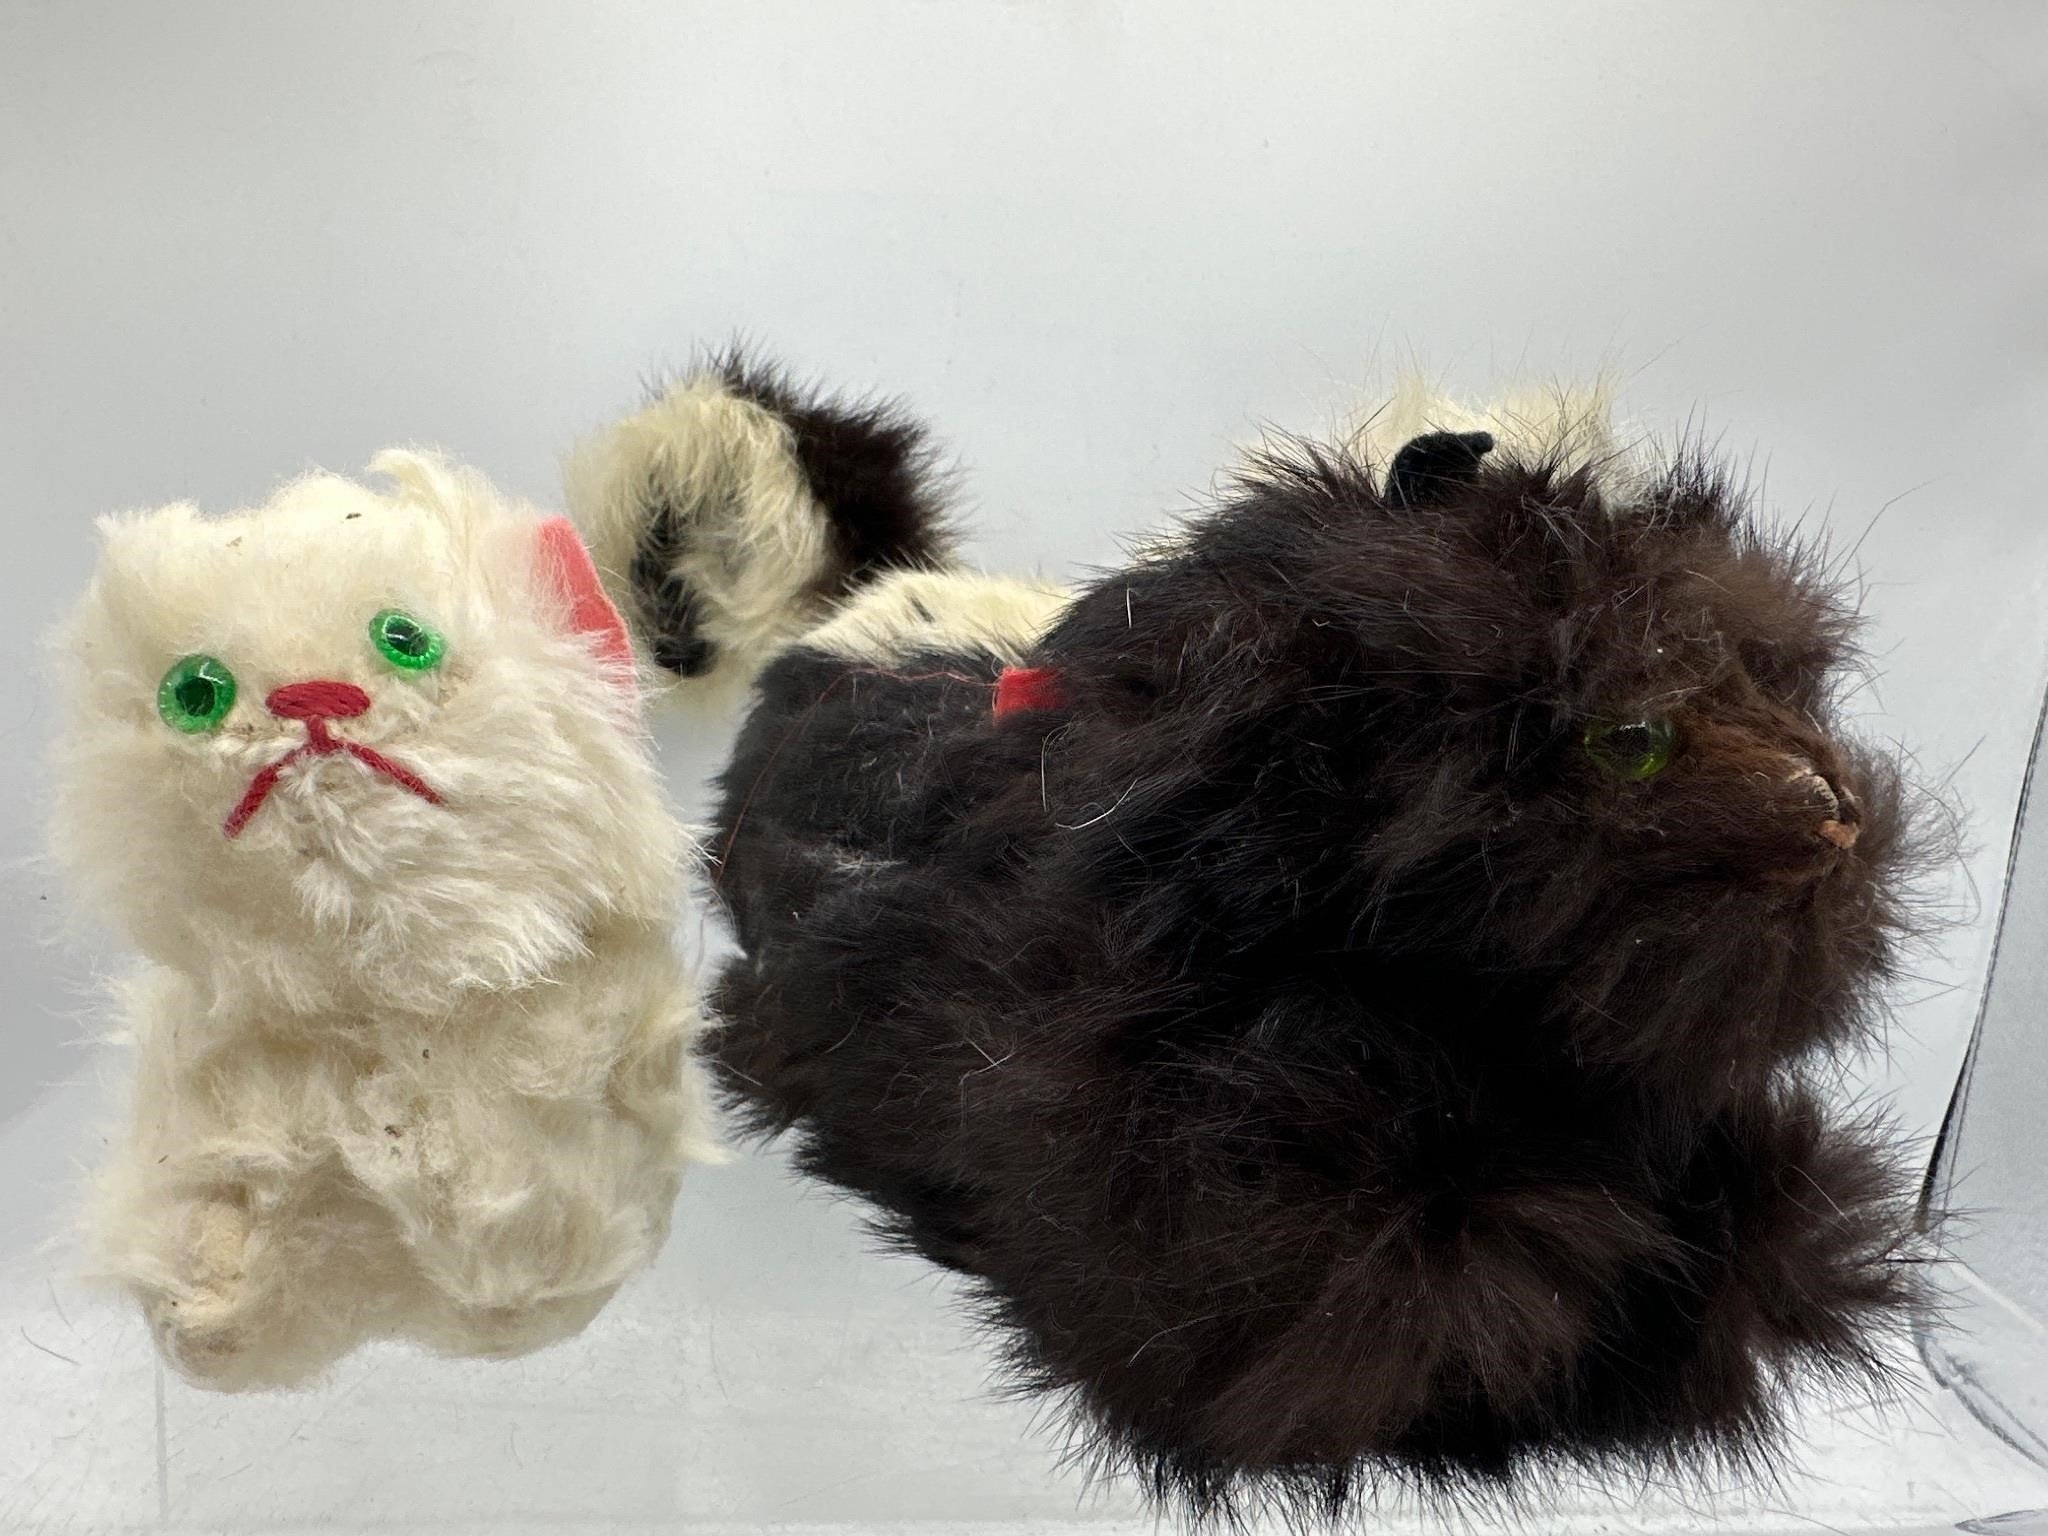 Vintage fur skunk & cat